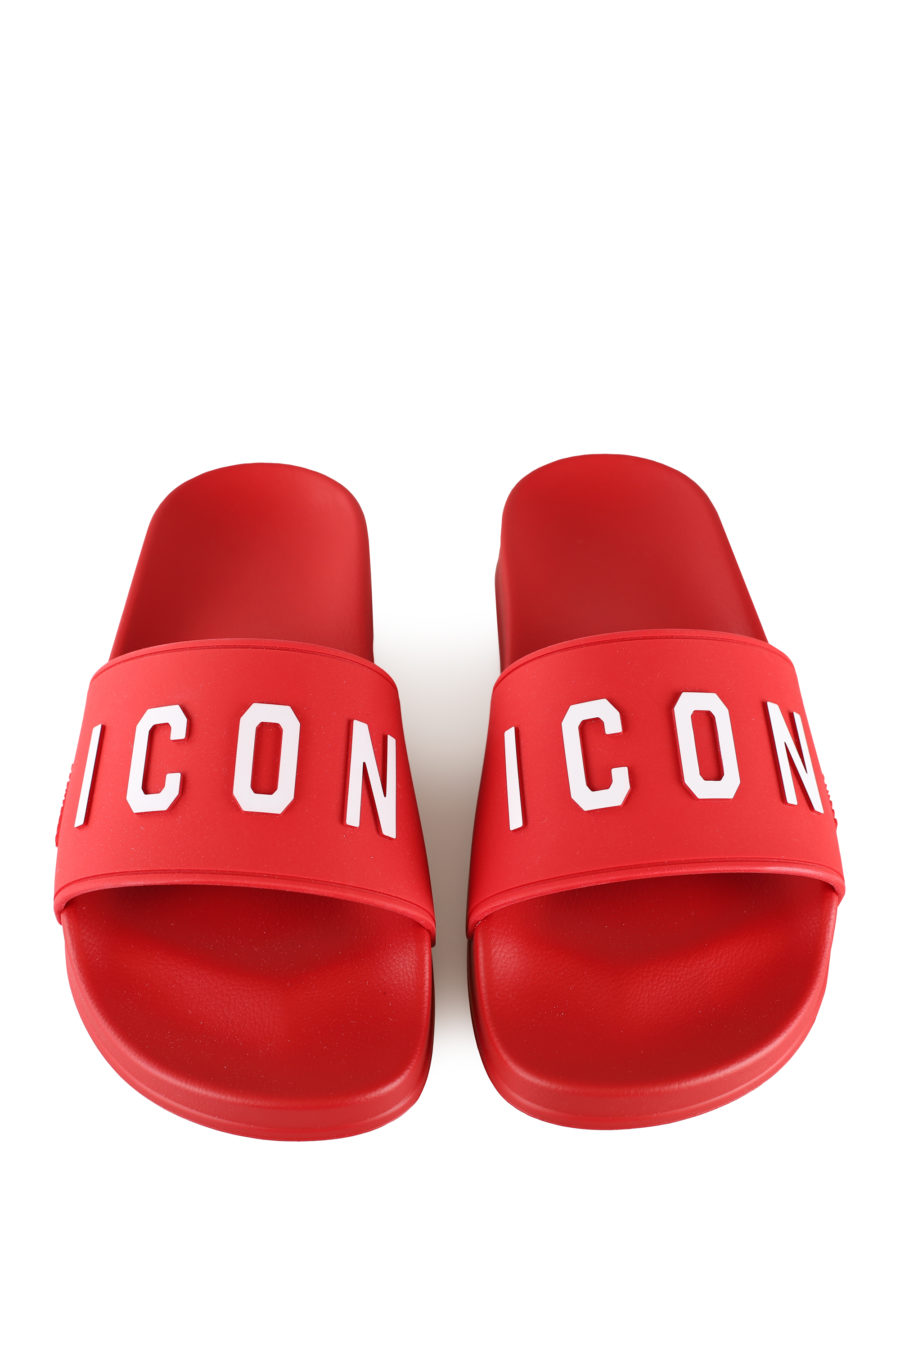 Rote Flip Flops mit weißem "Icon"-Logo - IMG 0046